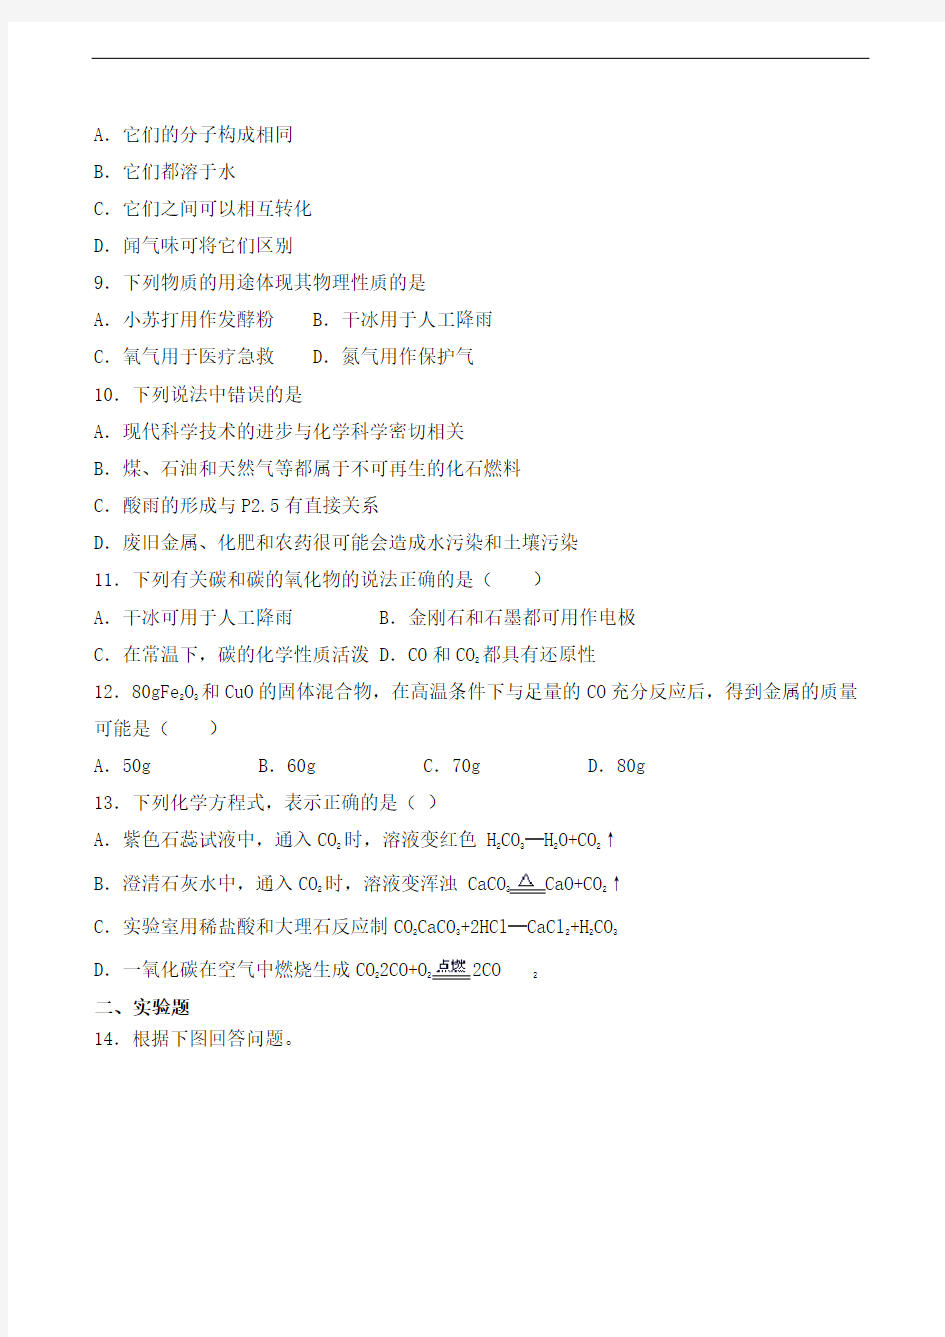 沪教版(上海)初中化学九年级第一学期第4章《燃料及其燃烧》检测题(含答案)